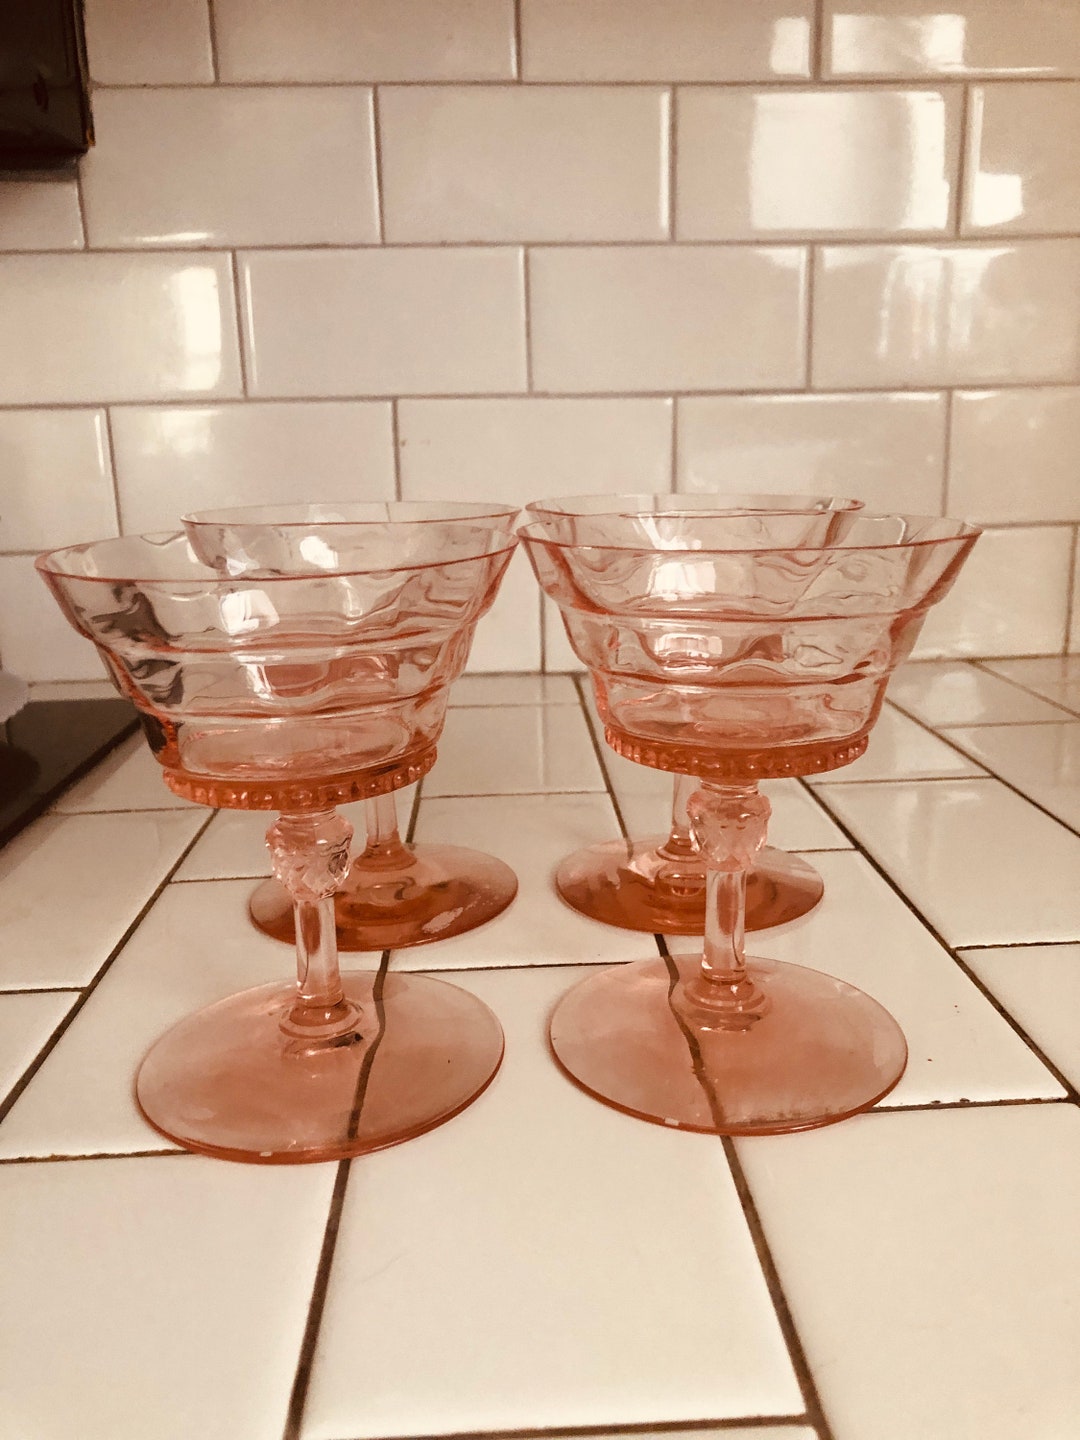 Set of 4 four Vintage PINK Stemmed WINE Glasses by Cris 